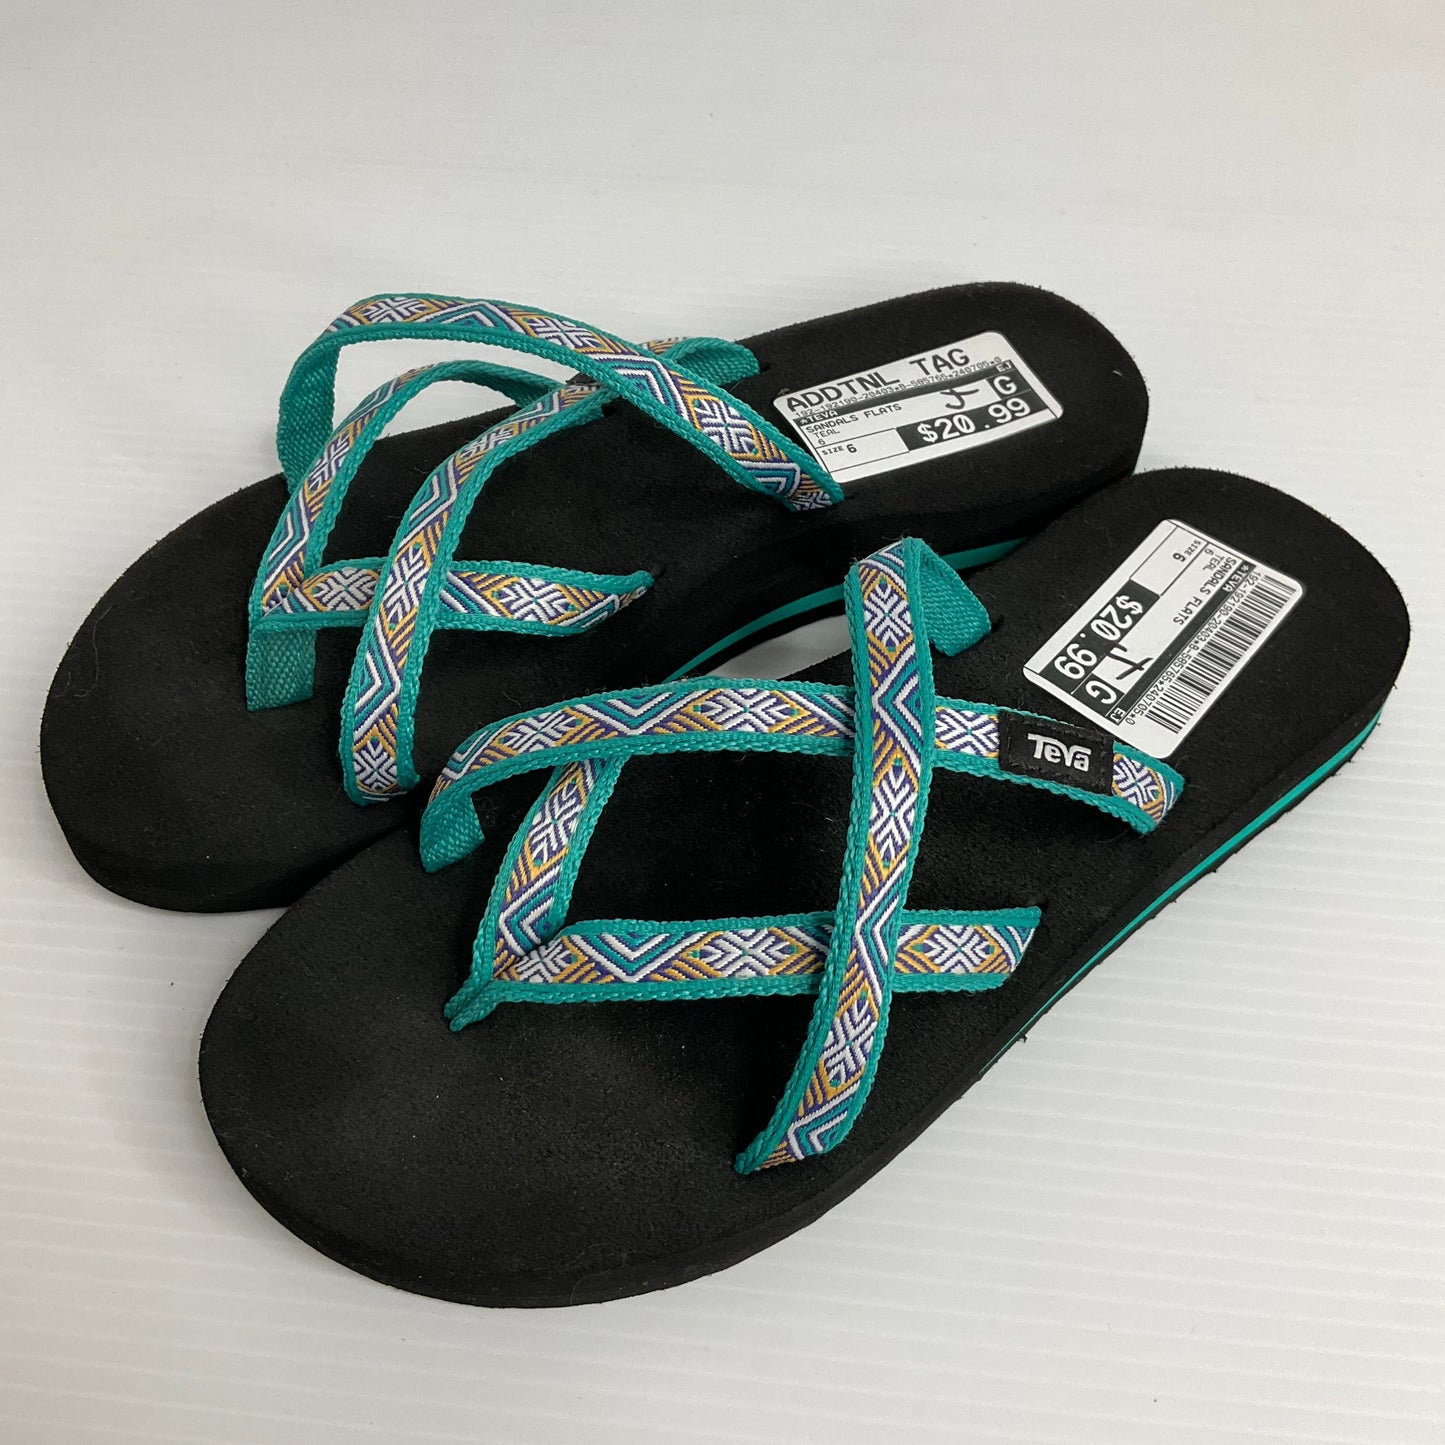 Teal Sandals Flats Teva, Size 6